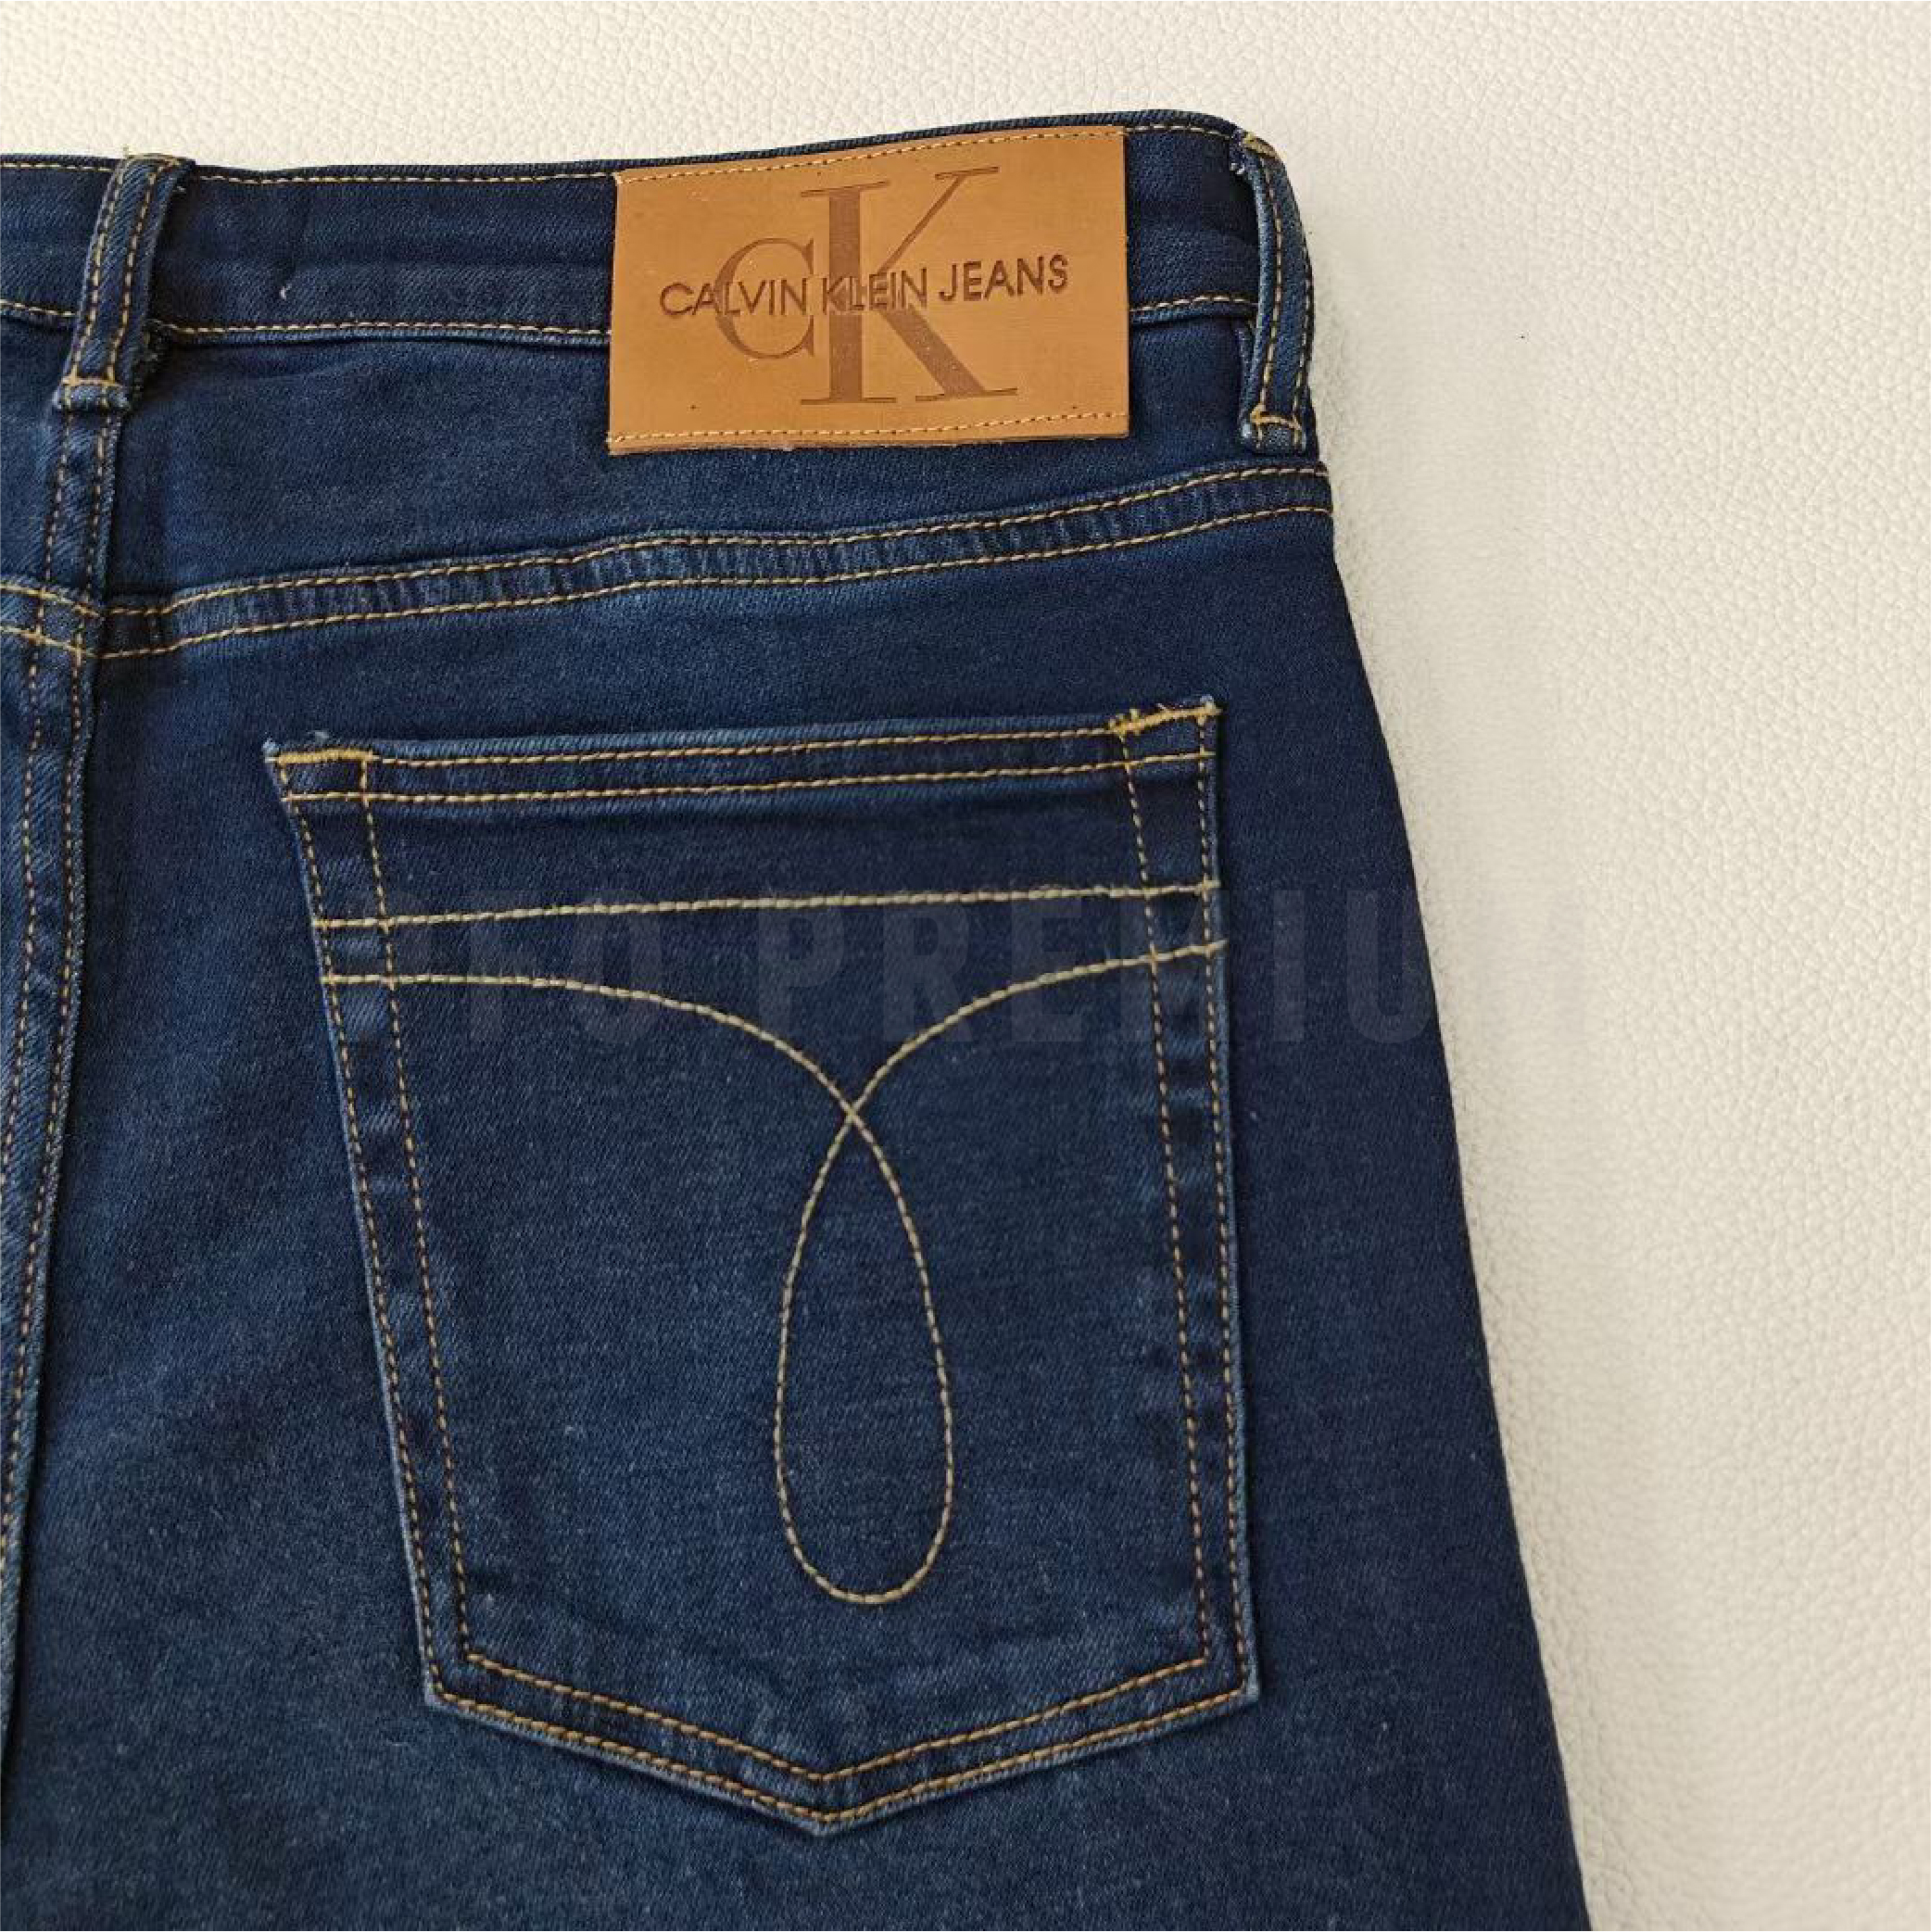 09.08.23 Calvin Klein Jeans-13